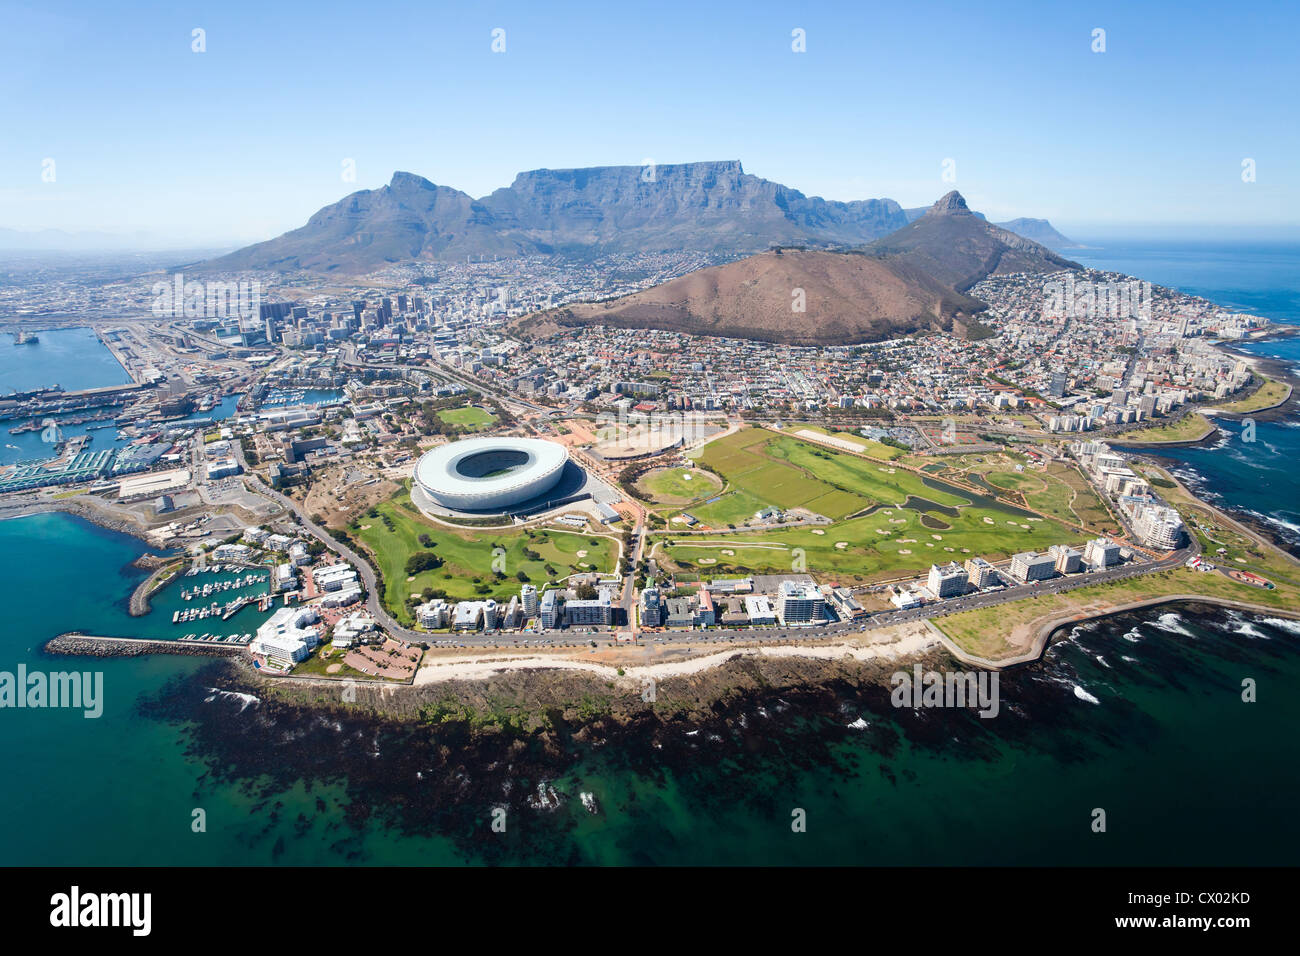 Vista aérea general de Ciudad del Cabo, Sudáfrica. Foto de stock